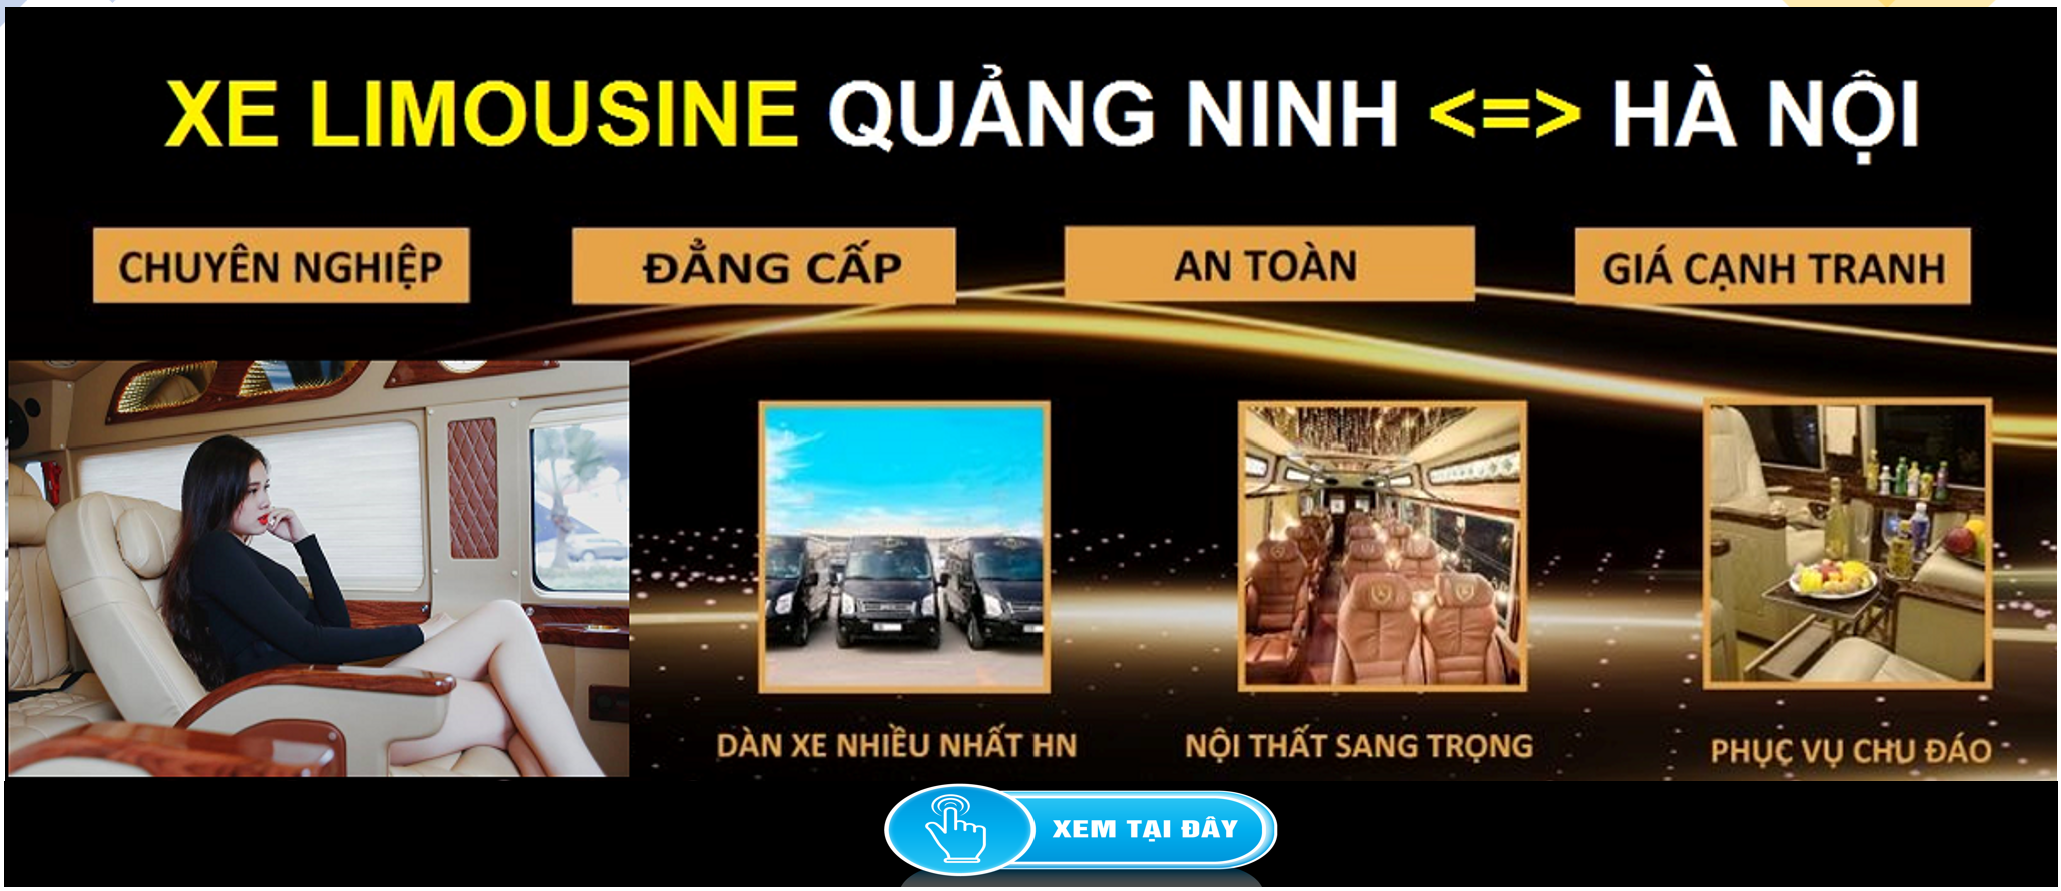 Xe Limousine Ha Noi Quang Ninh dua don tai nha 1d - Thời gian làm việc và Địa chỉ các trung tâm đăng kiểm xe cơ giới, xe ô tô tại Hà Nội